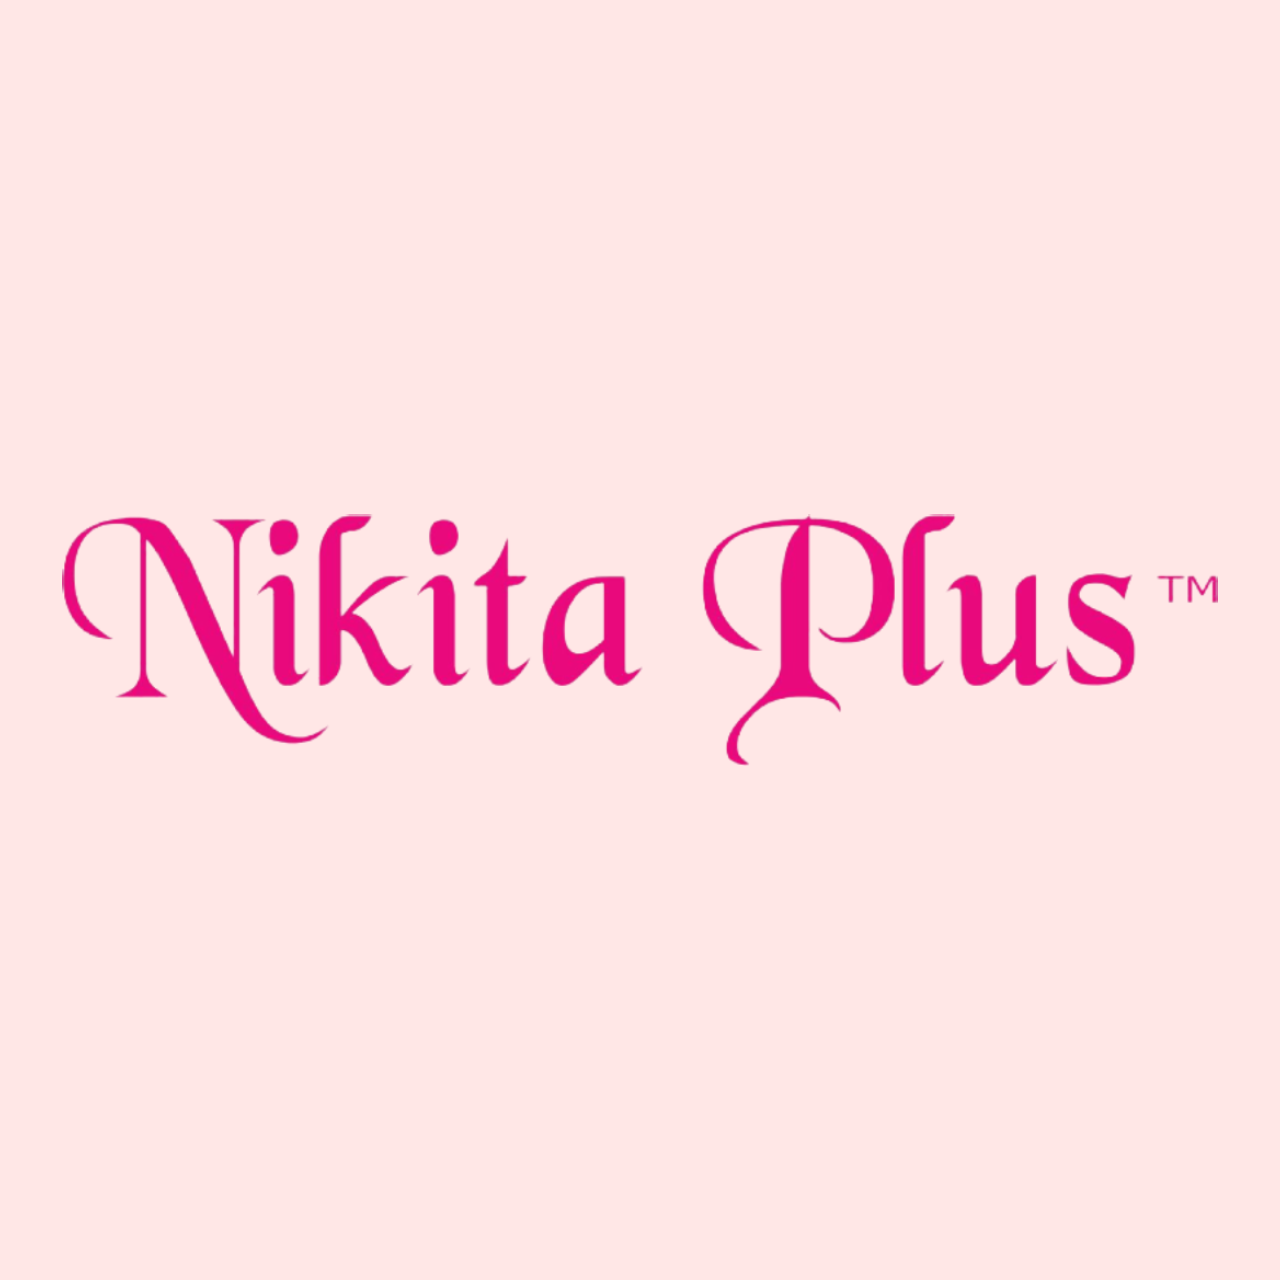 Nikita-plus-logo